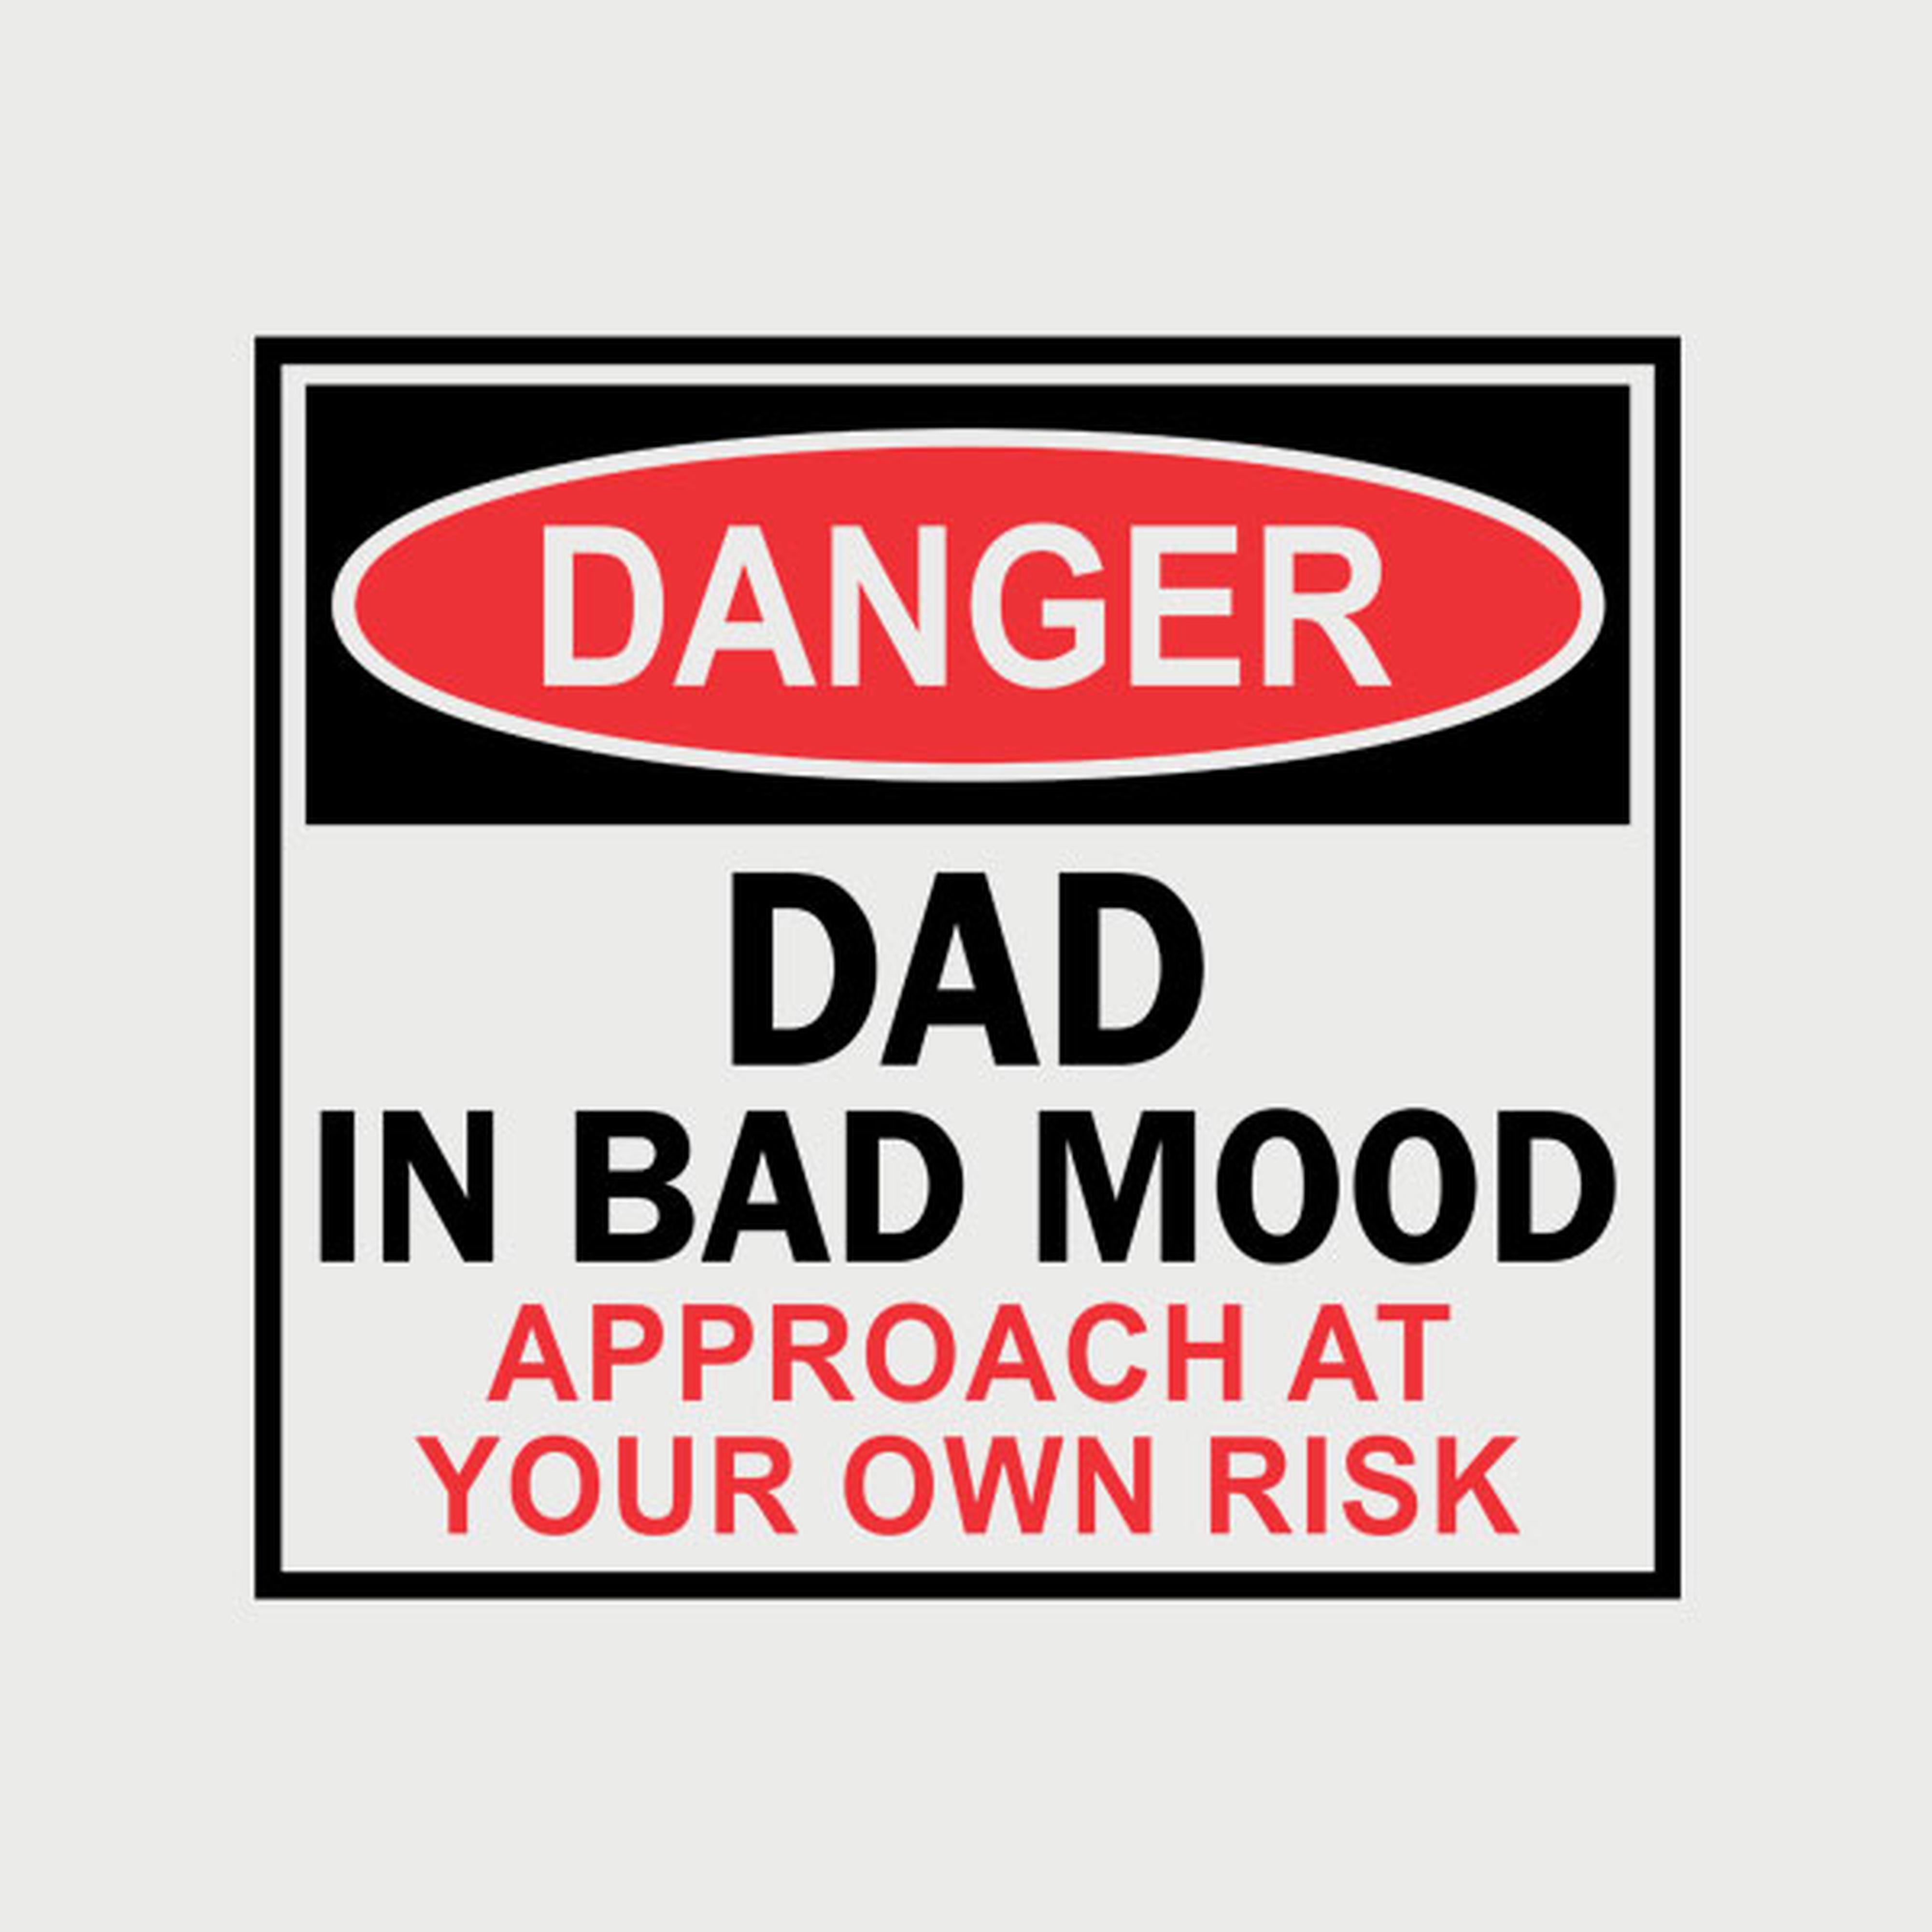 Dad in bad mood